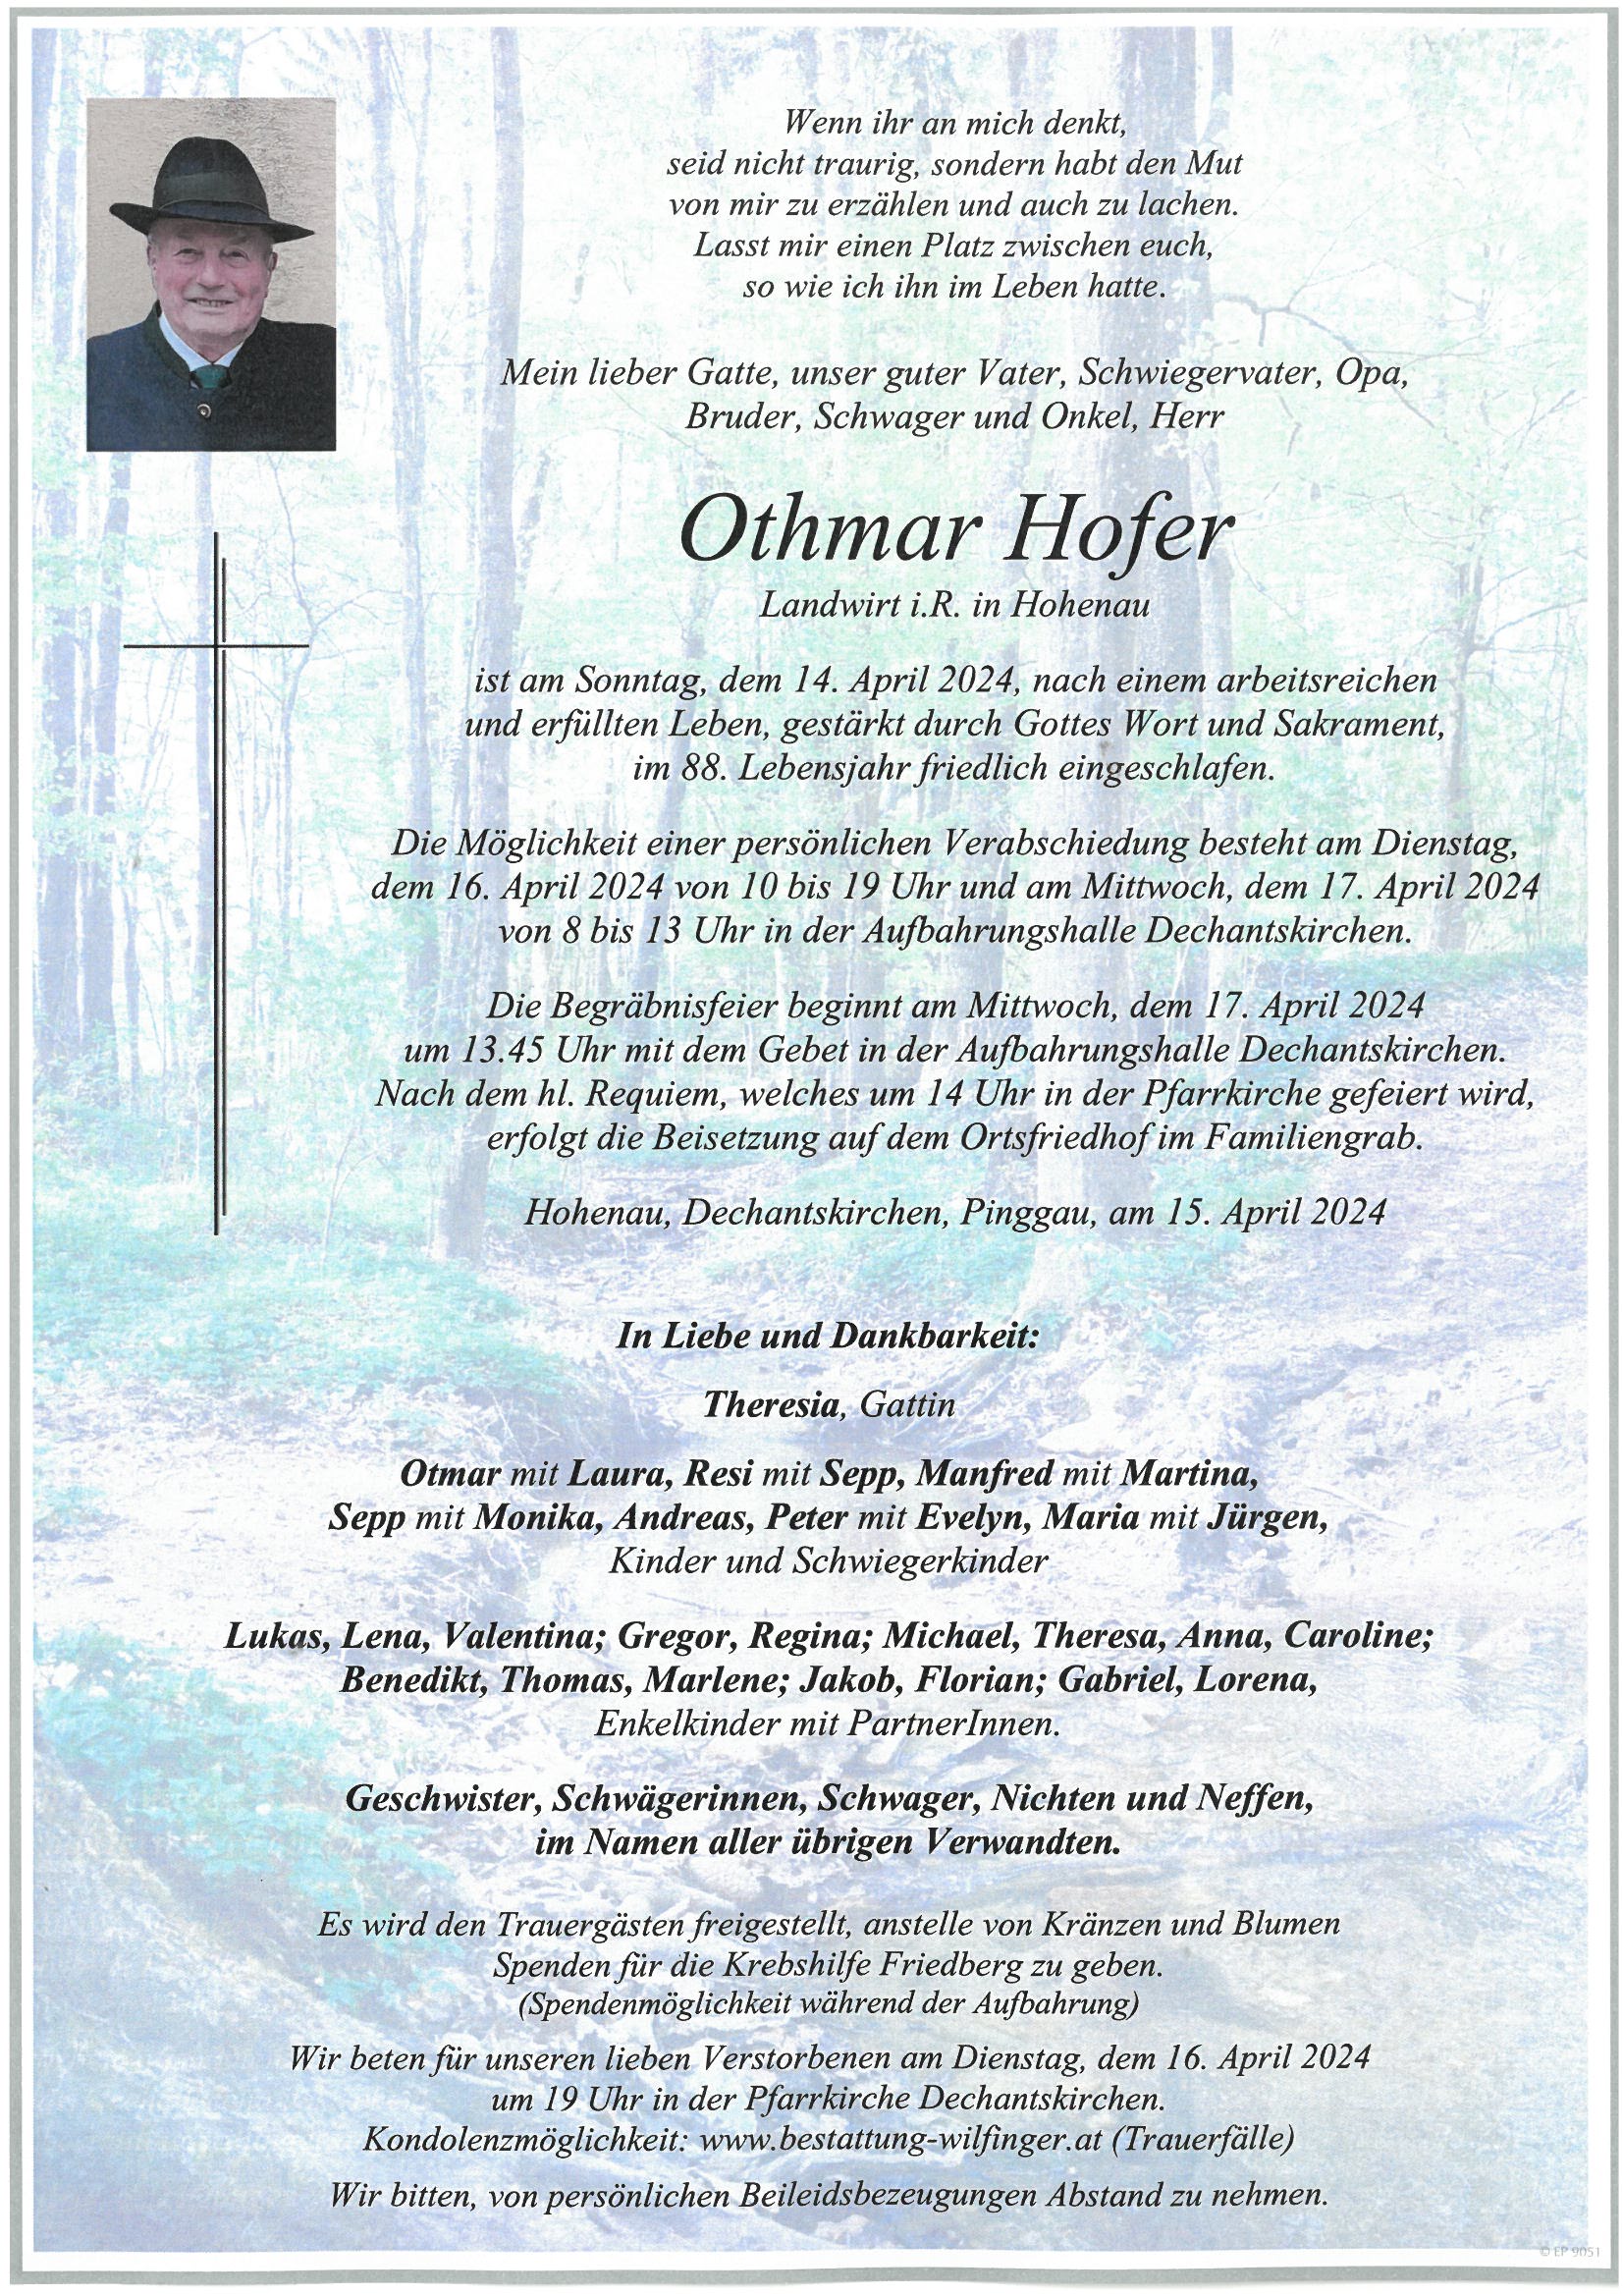 Othmar Hofer, Hohenau